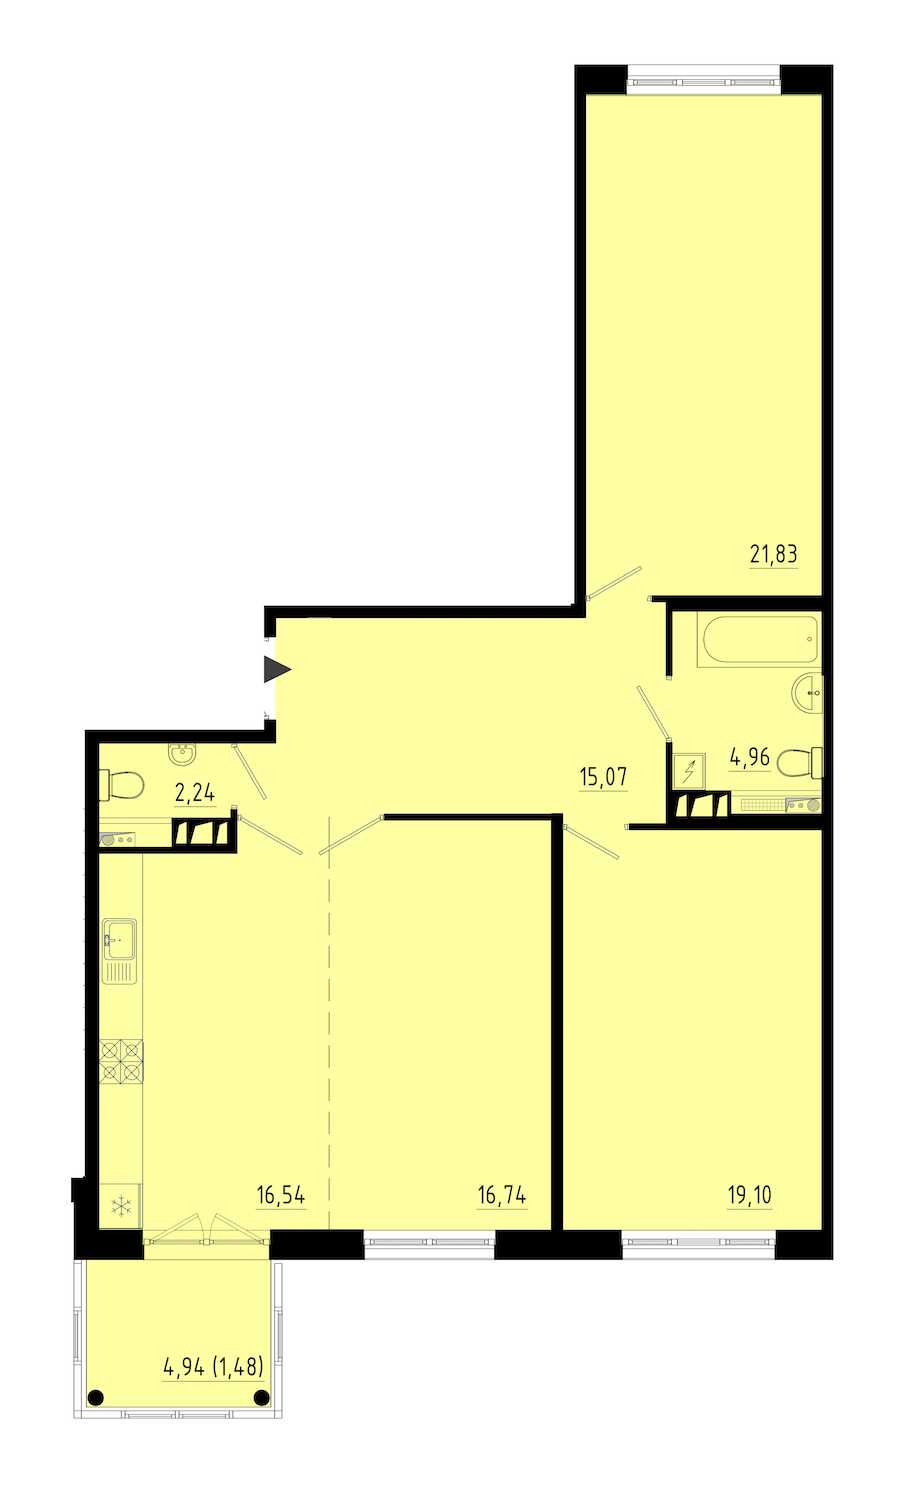 Двухкомнатная квартира в : площадь 97.1 м2 , этаж: 4 – купить в Санкт-Петербурге